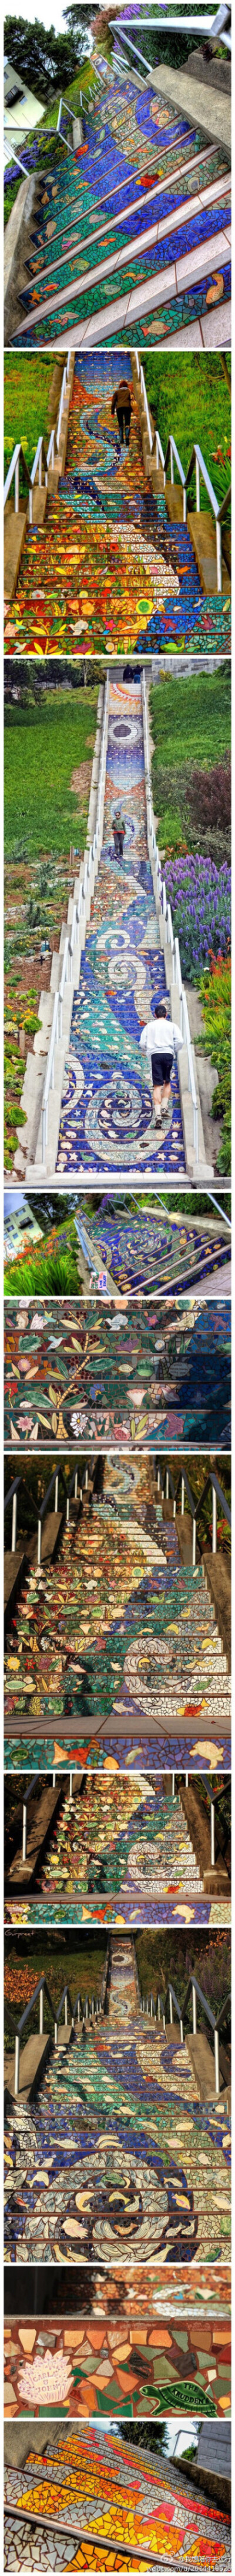 【马赛克楼梯】位于旧金山第16大道的交叉点，163级台阶共用75000个瓷砖碎片，镜子，彩色玻璃组成，描绘了一个从太阳到海底的梦幻世界，被誉为世界上最美的楼梯，想走在这样的楼梯上吗？